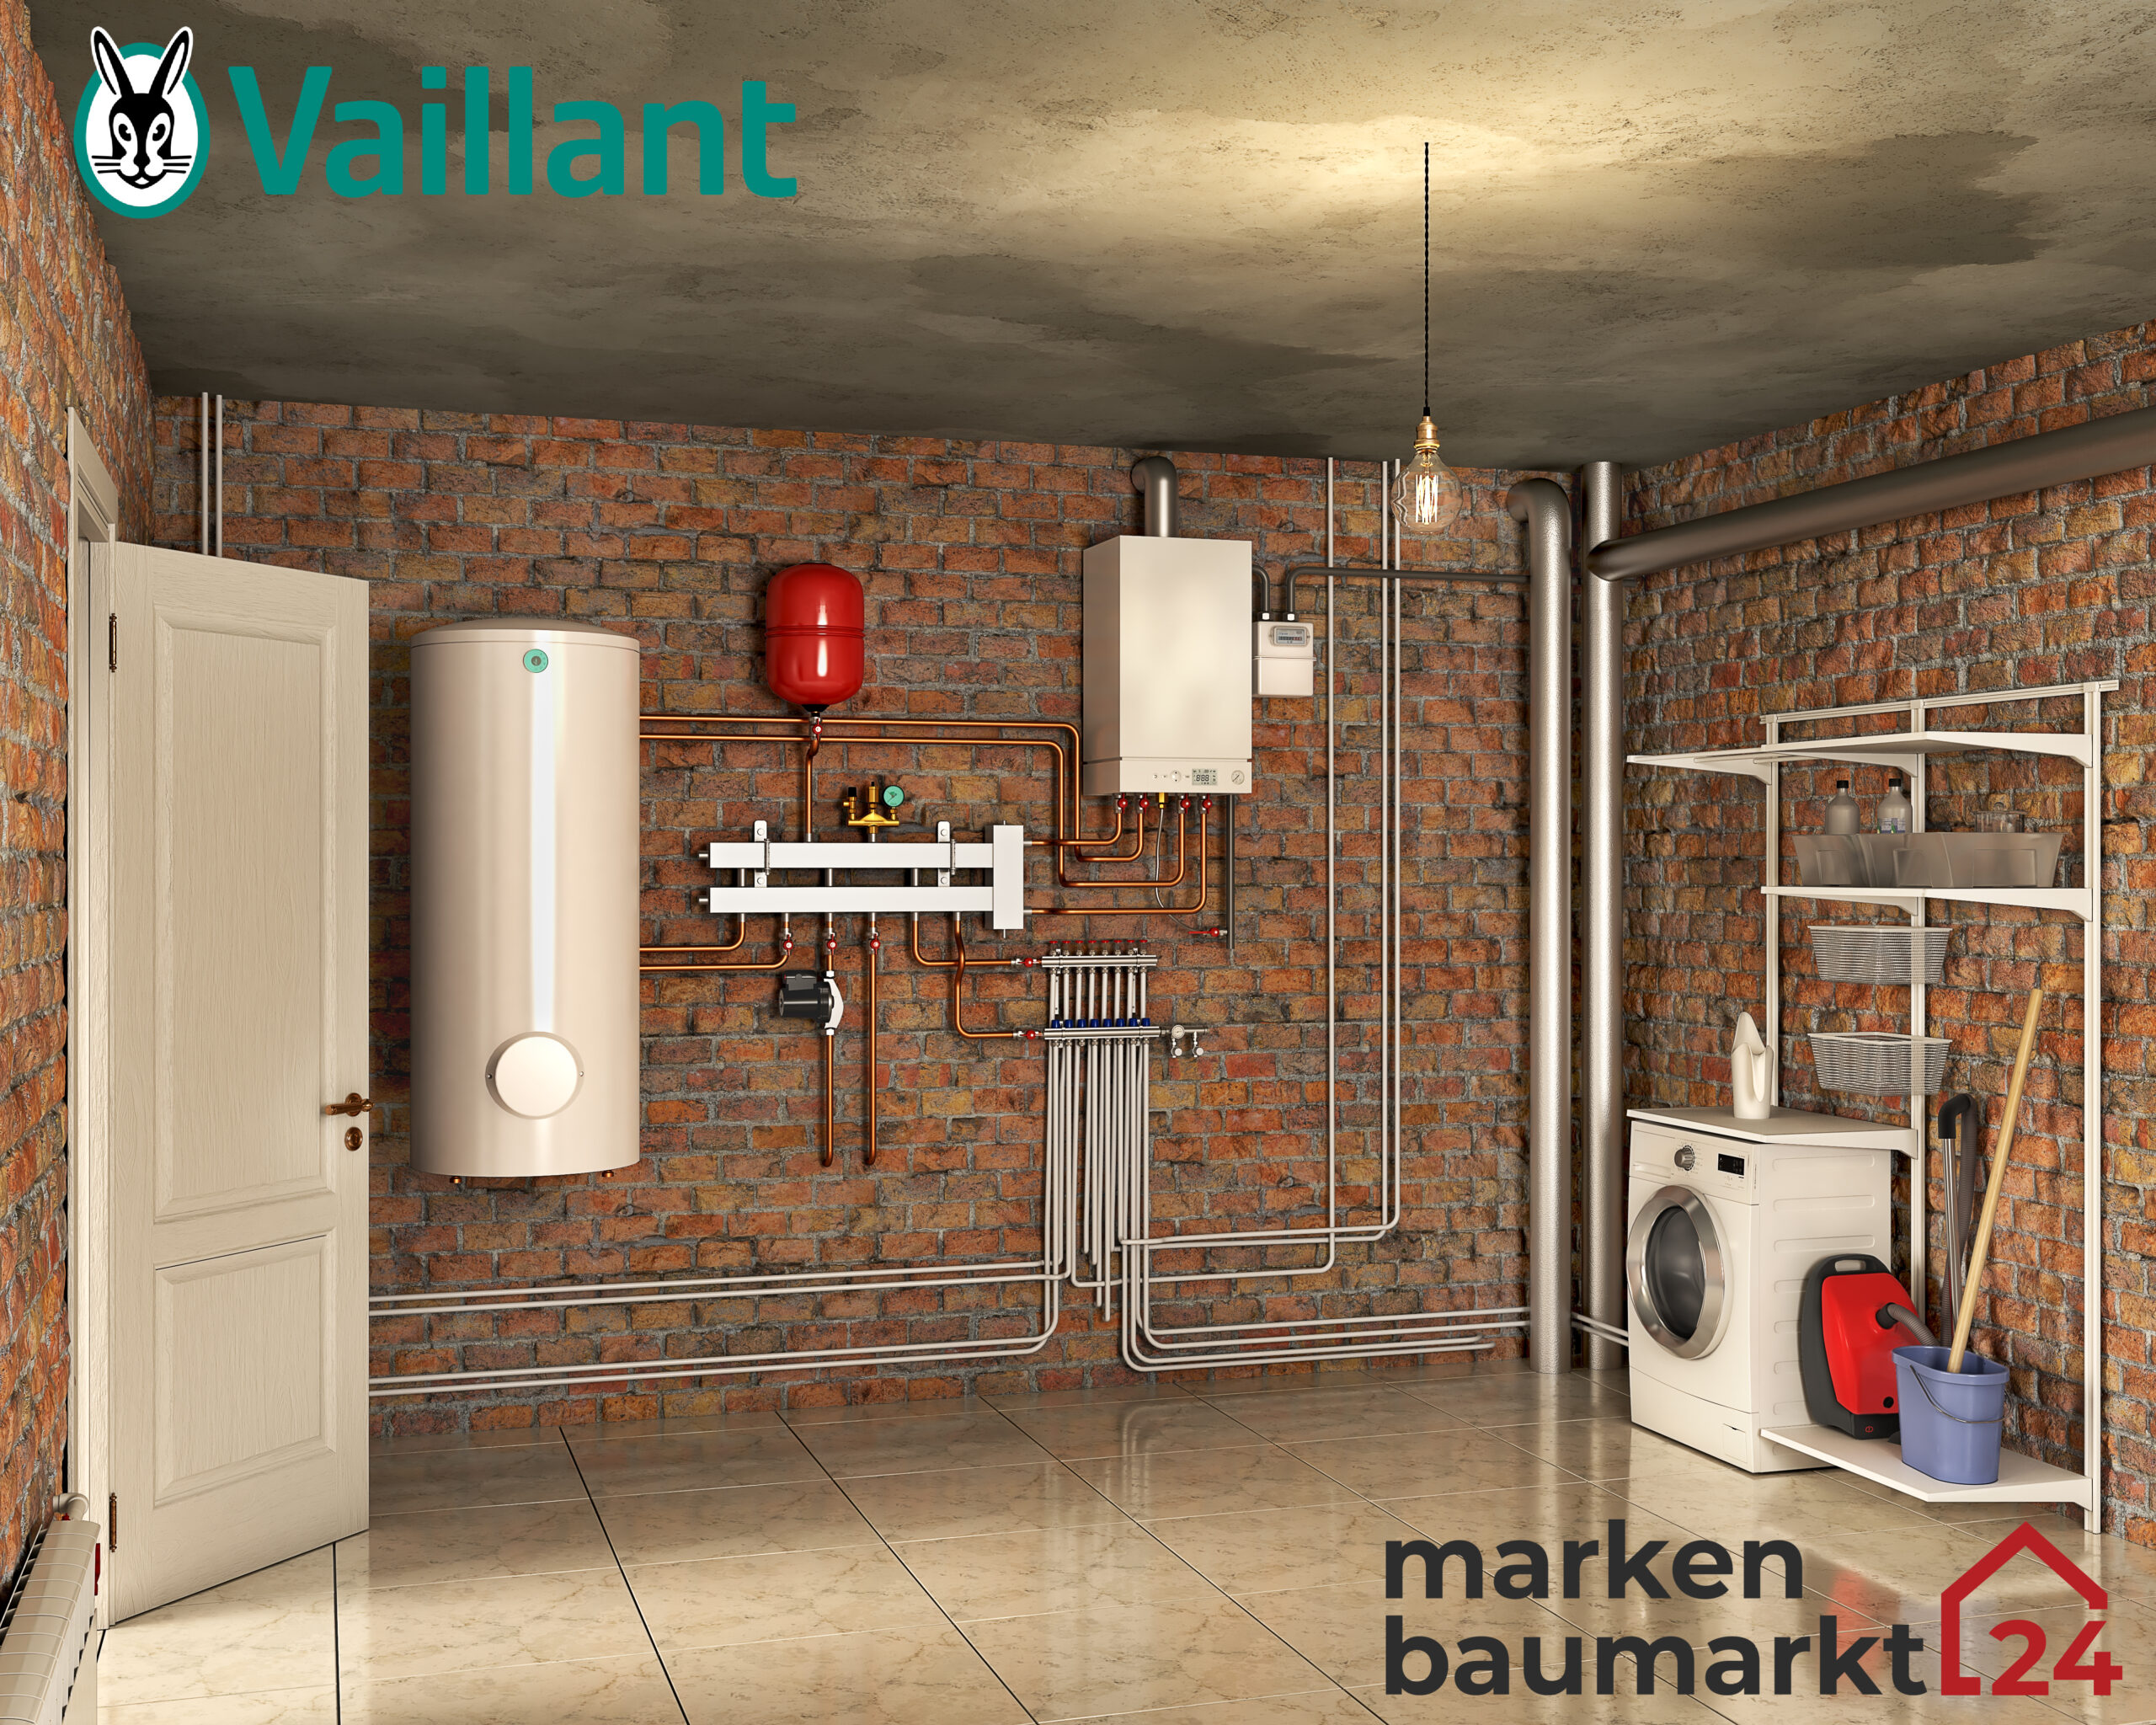 Vaillant Elostor oder Vaillant Arostor? | Elektro Warmwasserspeicher oder Warmwasser Wärmepumpe? Wie funktioniert eine Wärmepumpe?